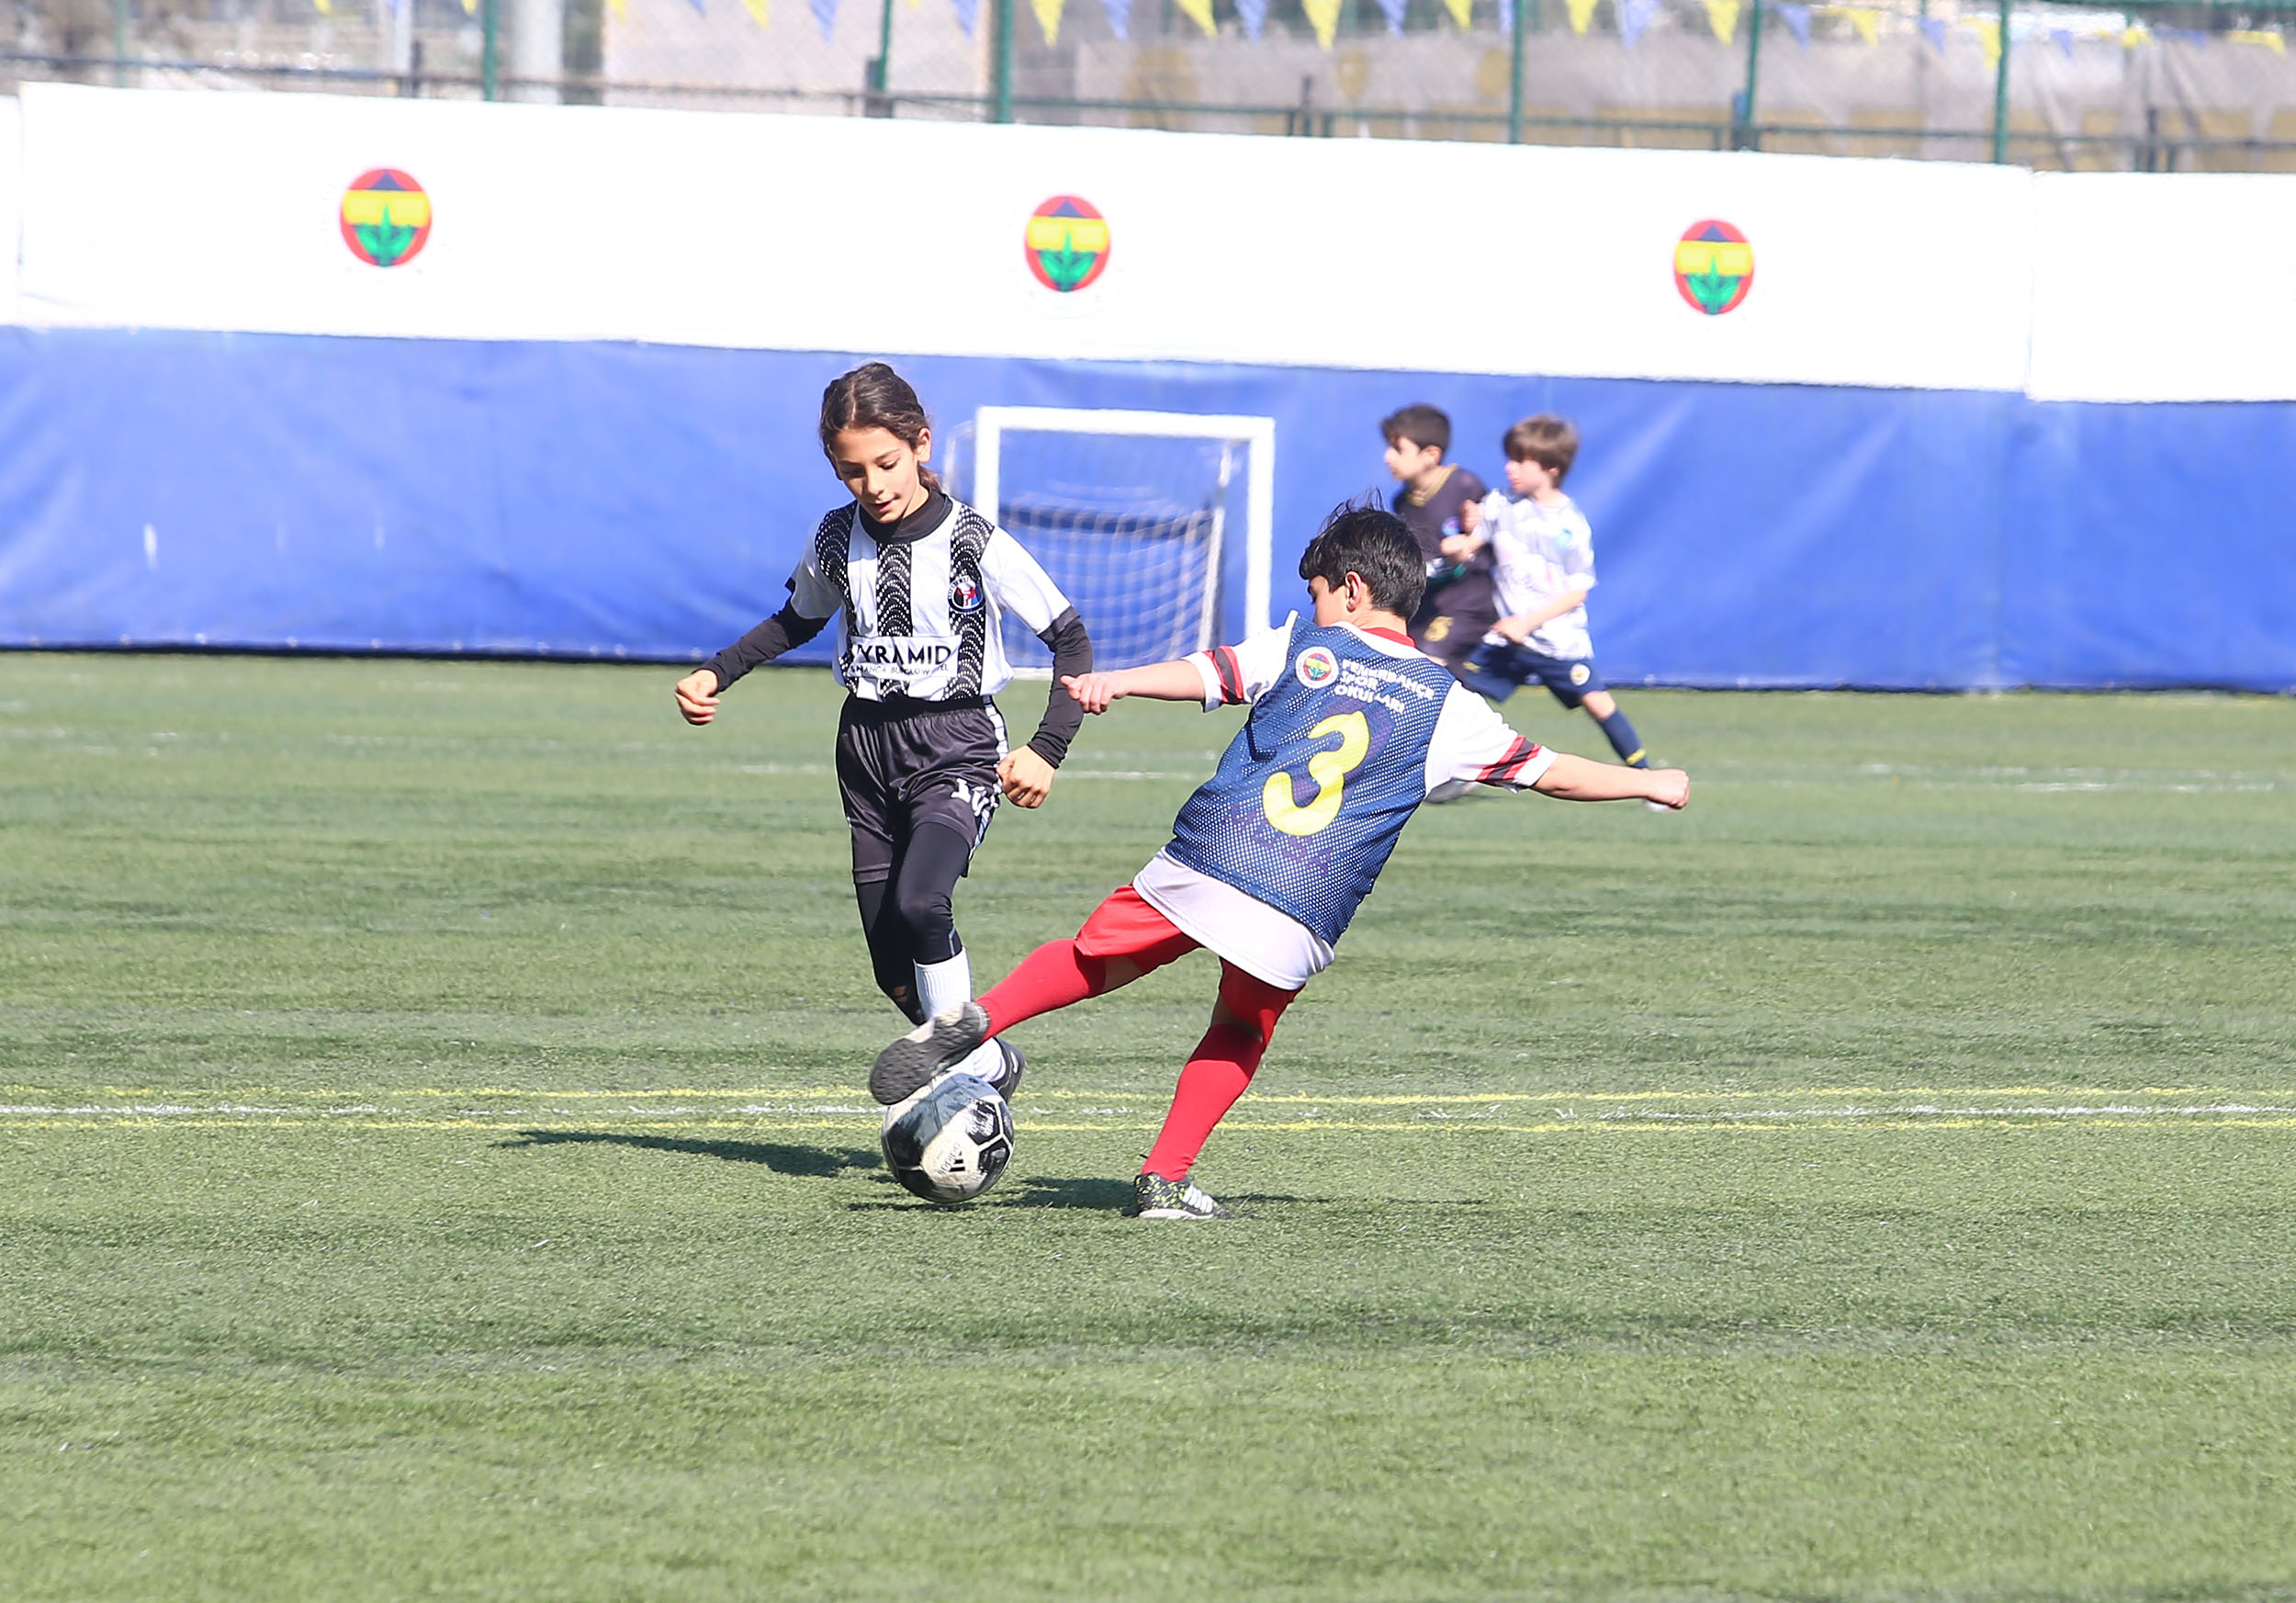 Fenerbahçe Futbol Akademimiz, “U10 Bahara Merhaba Turnuvası”na ev sahipliği yaptı